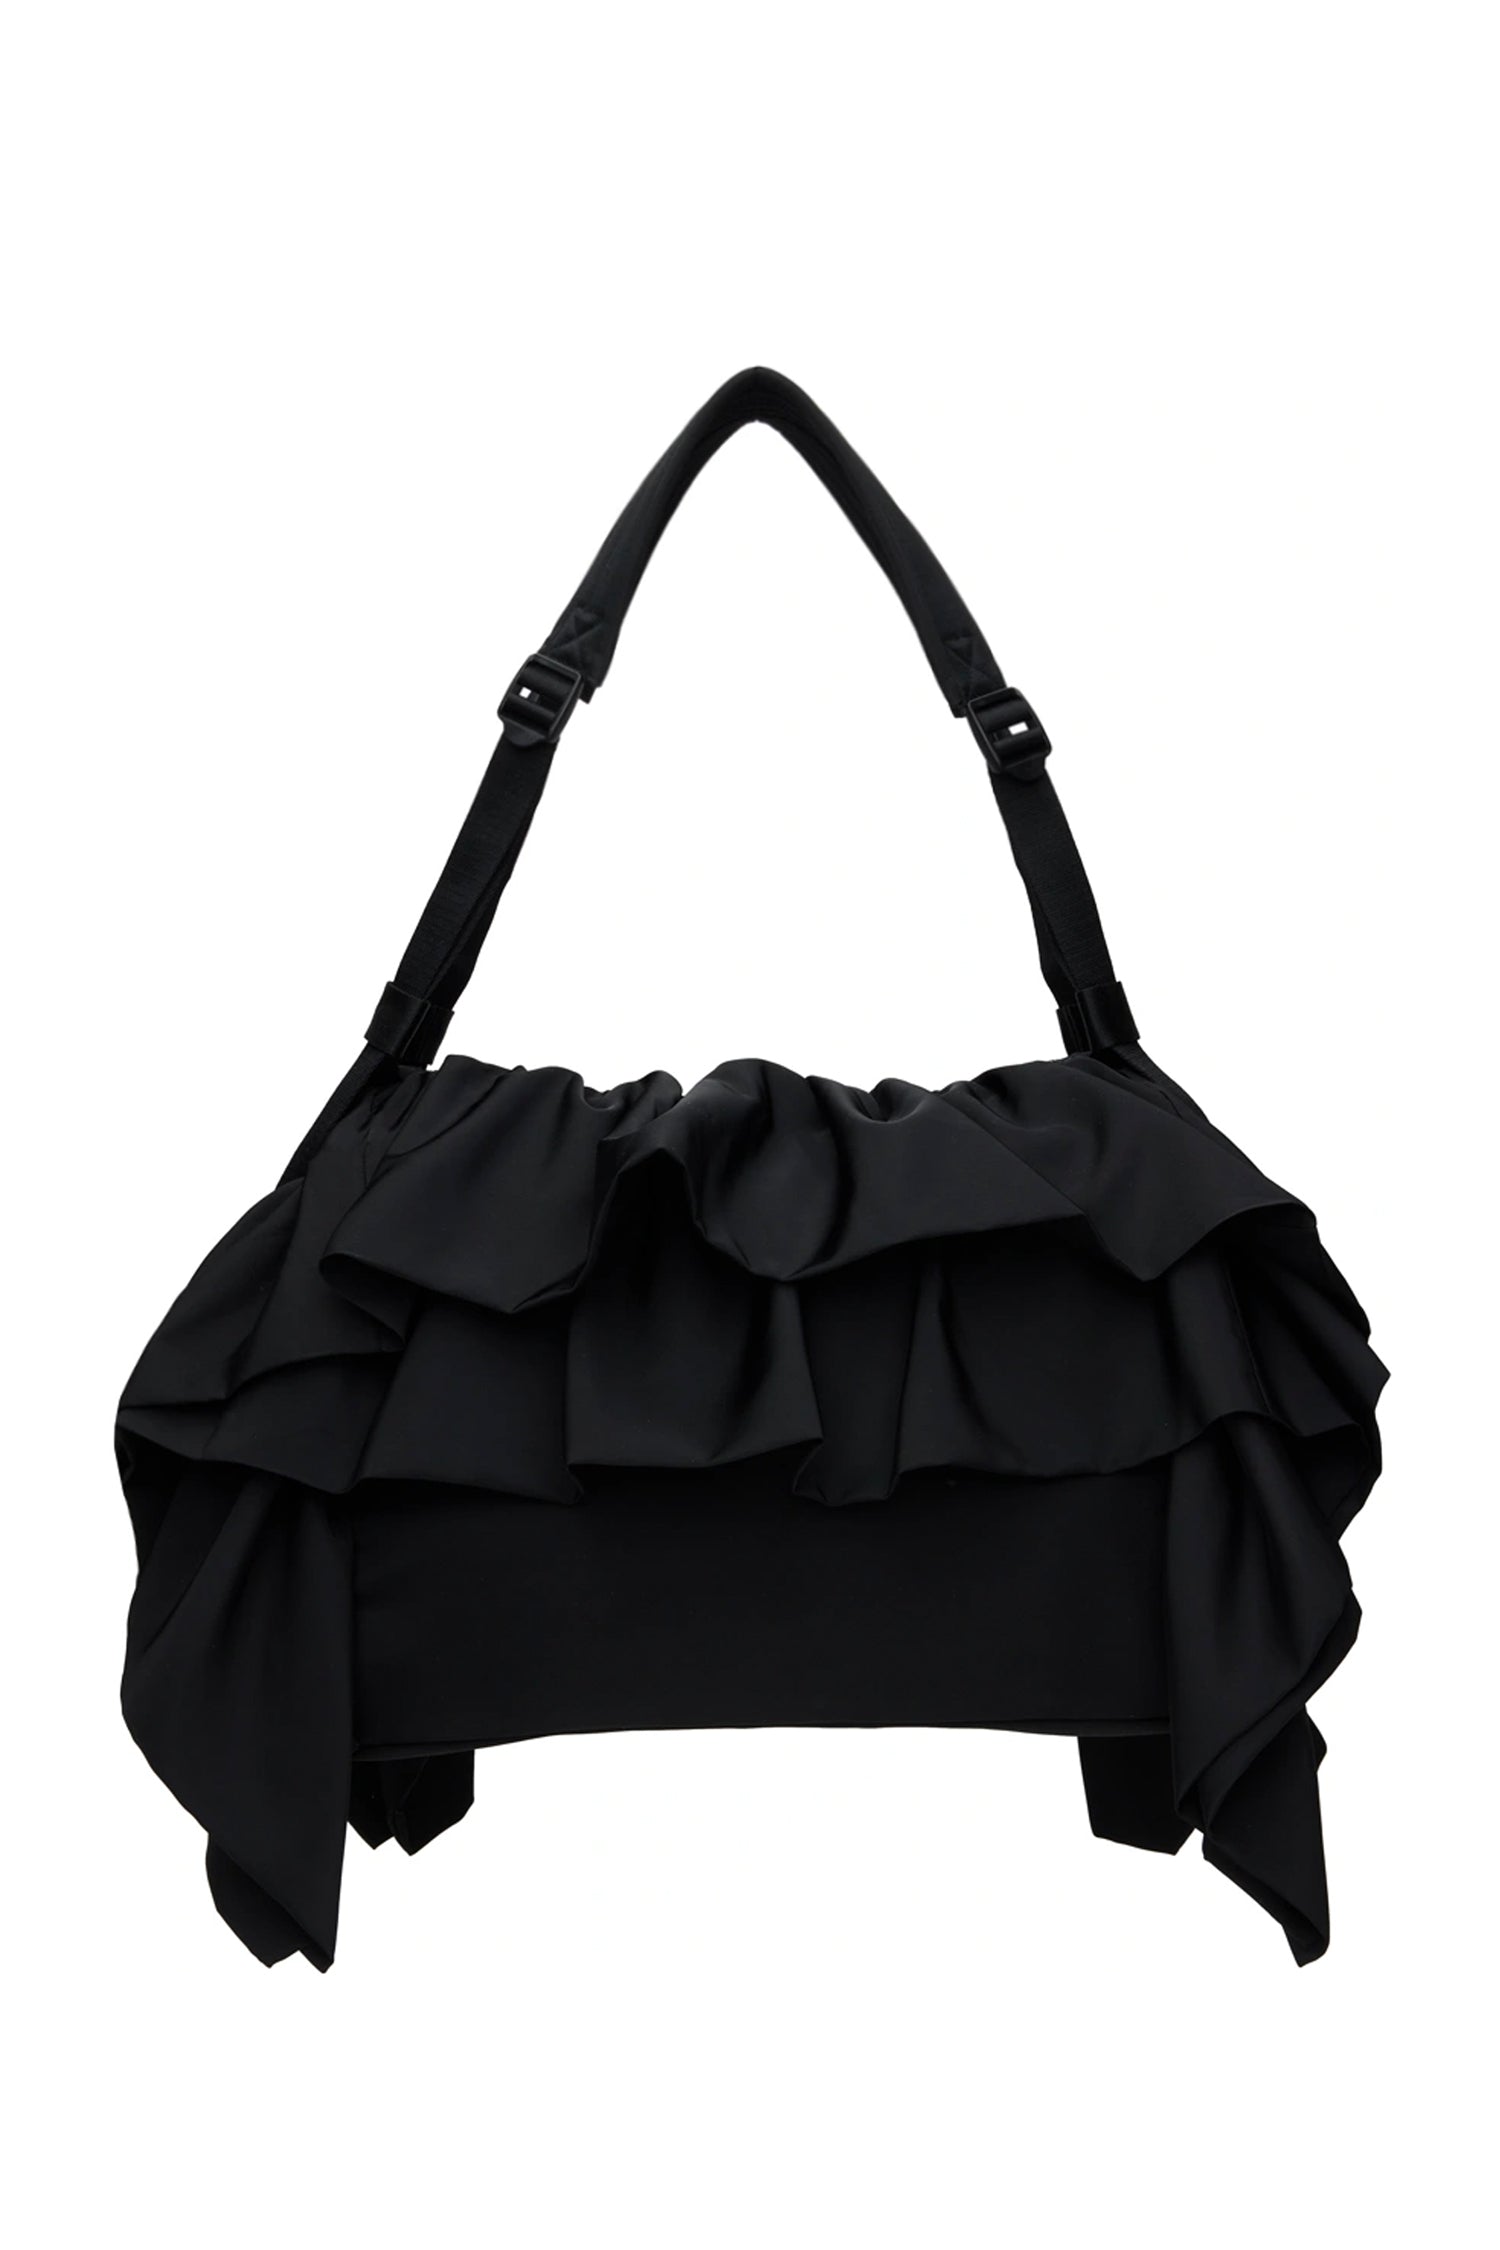 20,240円JILTU petit frill bag black/black バッグ